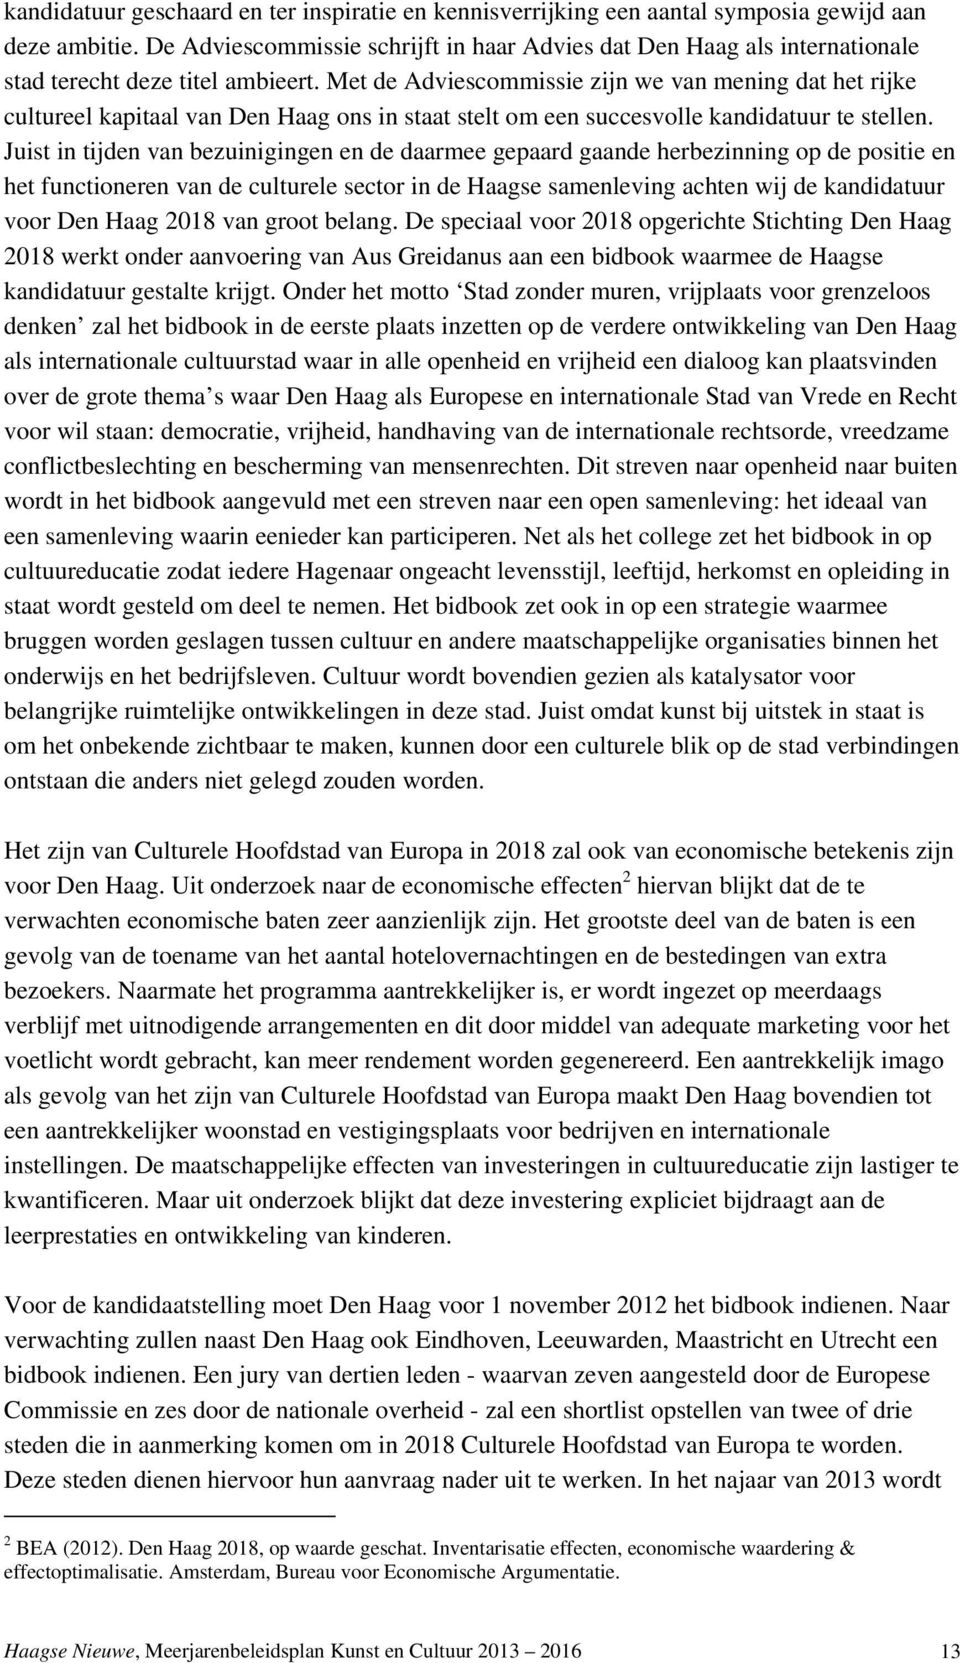 Met de Adviescommissie zijn we van mening dat het rijke cultureel kapitaal van Den Haag ons in staat stelt om een succesvolle kandidatuur te stellen.